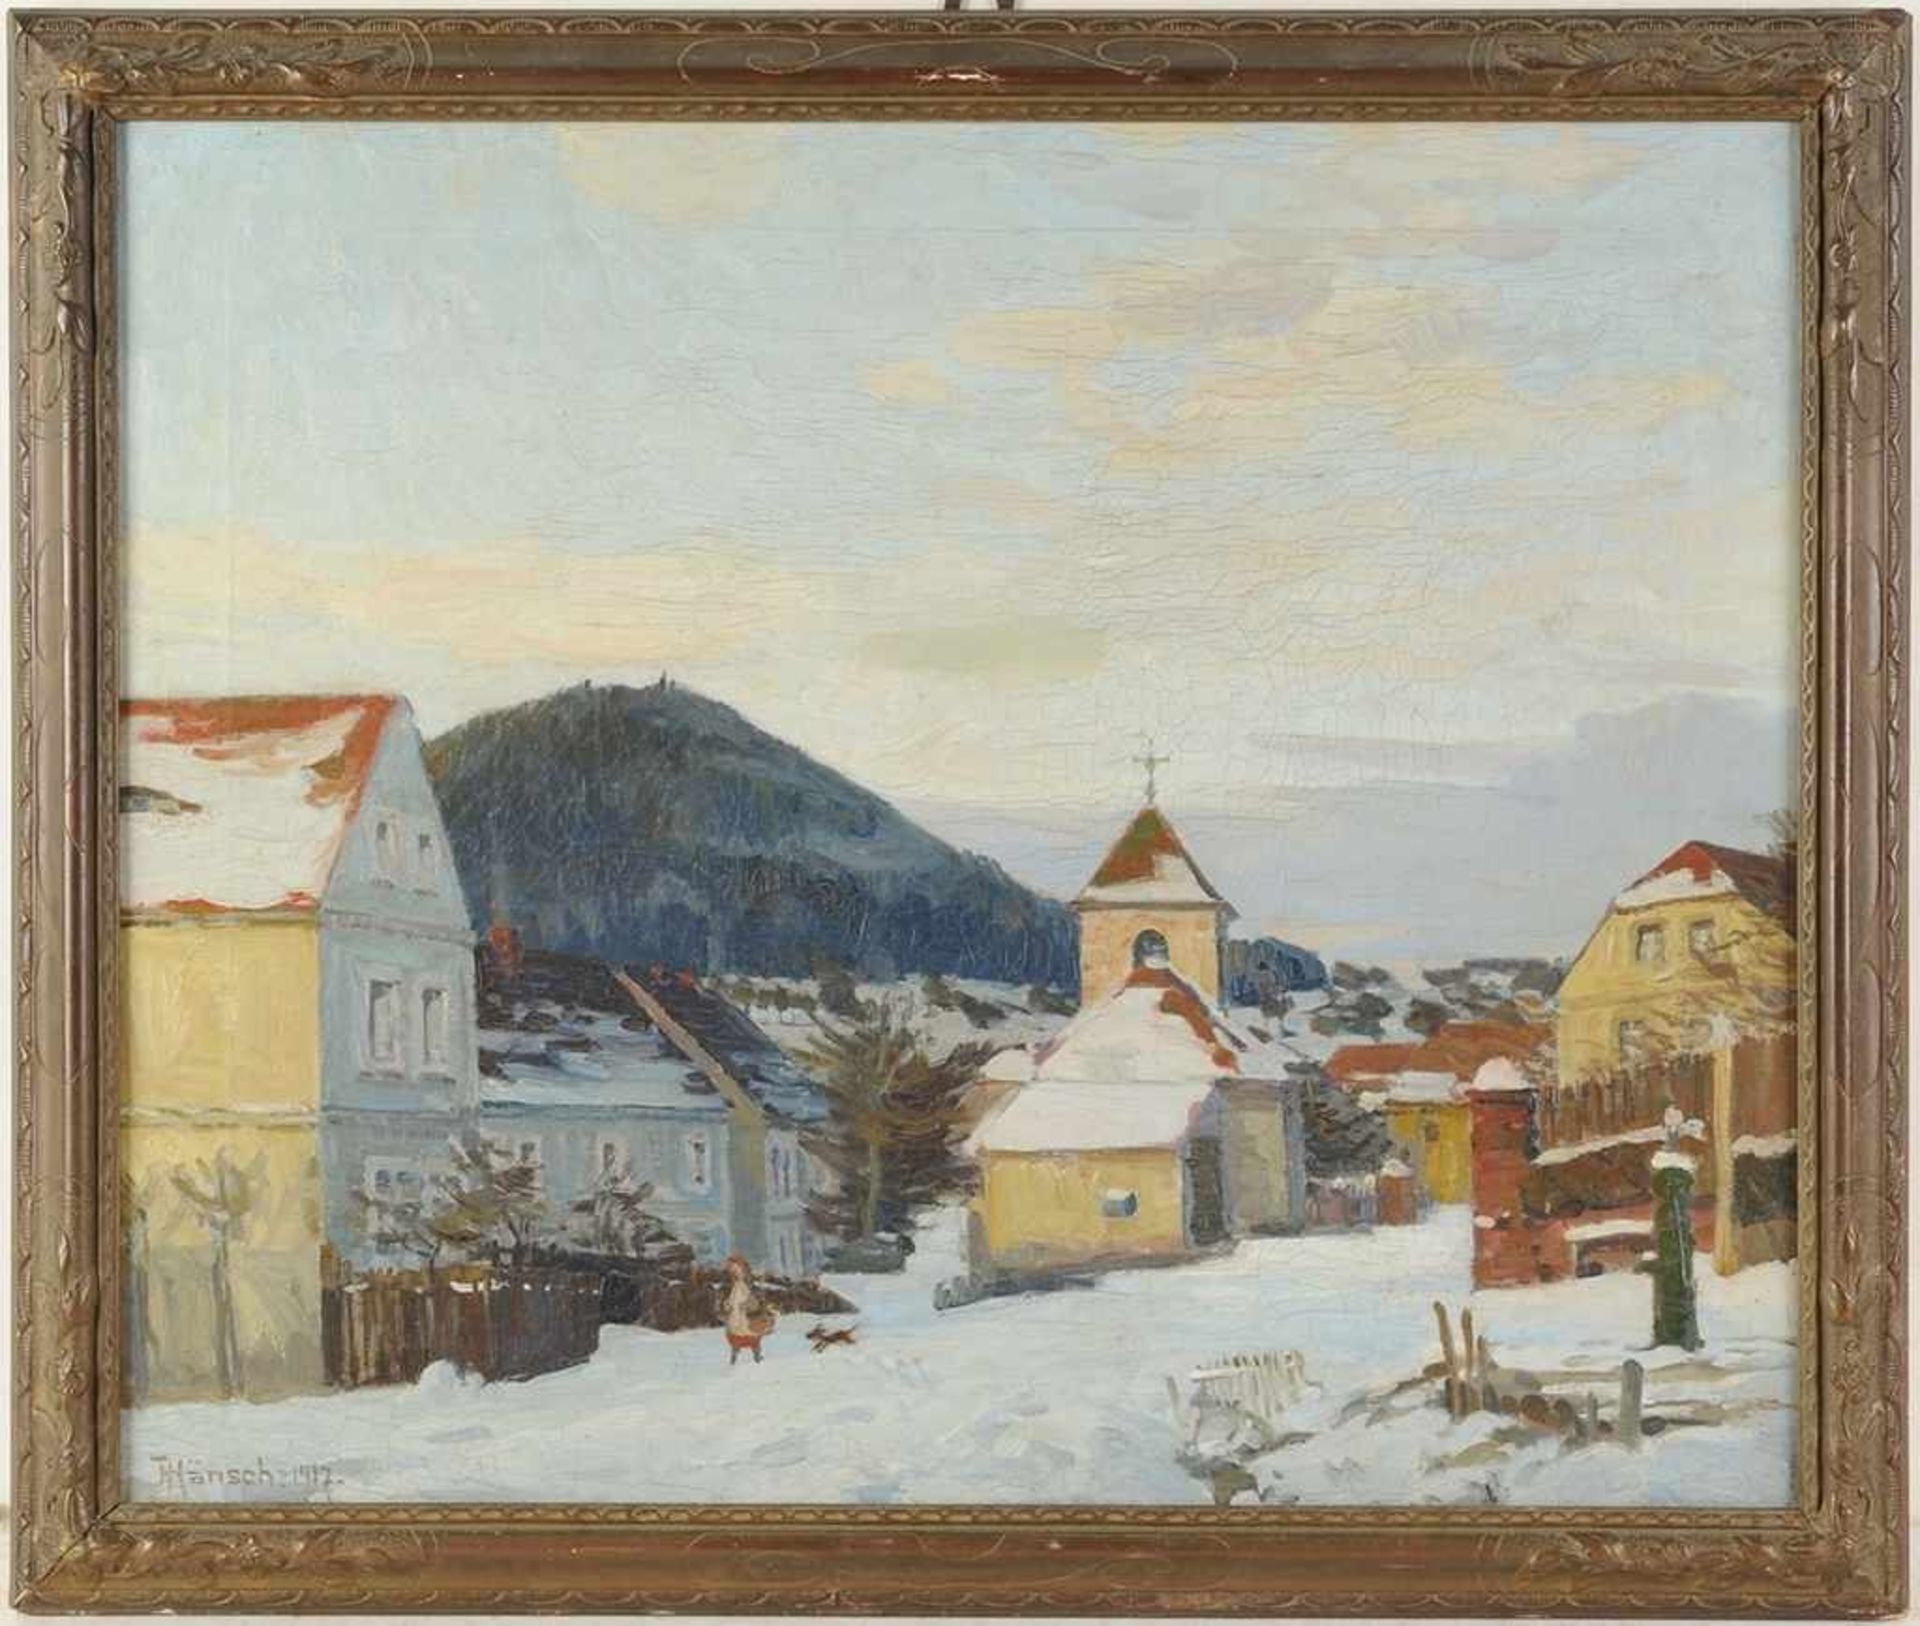 Hänsch, Johannes(Berlin 1875 - 1945) Öl/Lwd. "Winterabend (Eulengebr.)", dörfliche Landschaft mit